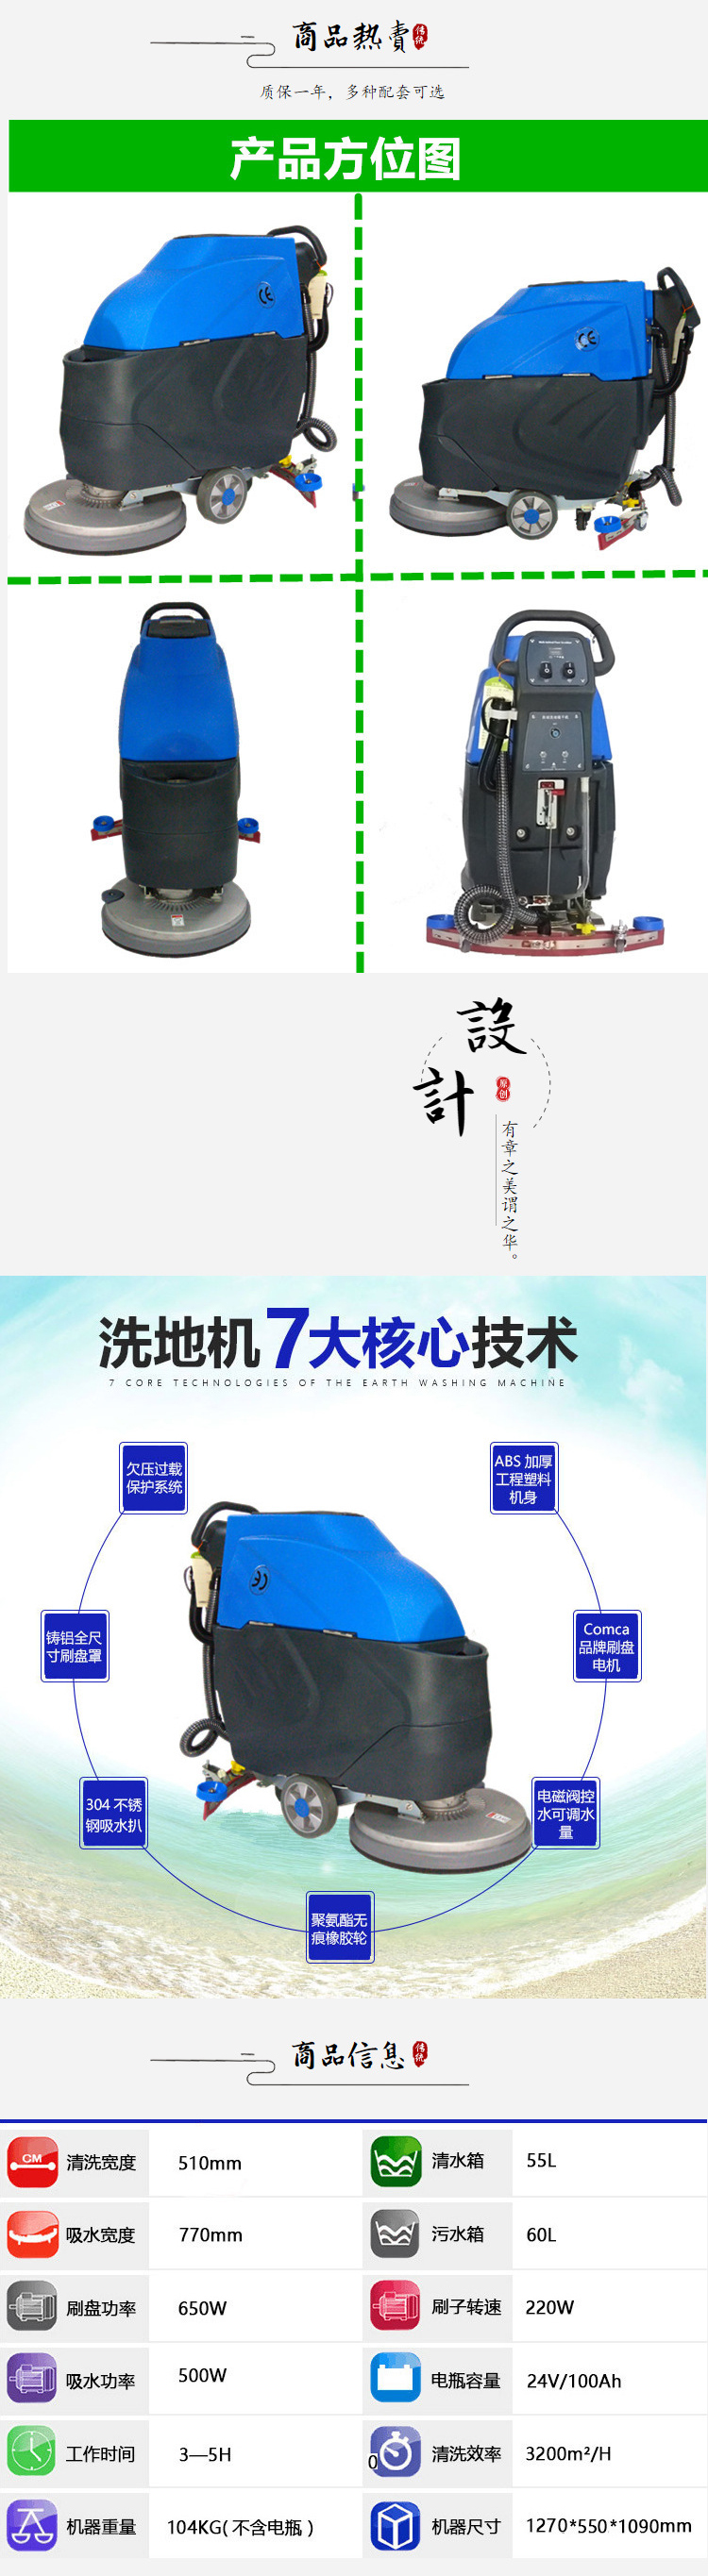 北京市电瓶式洗地机对比